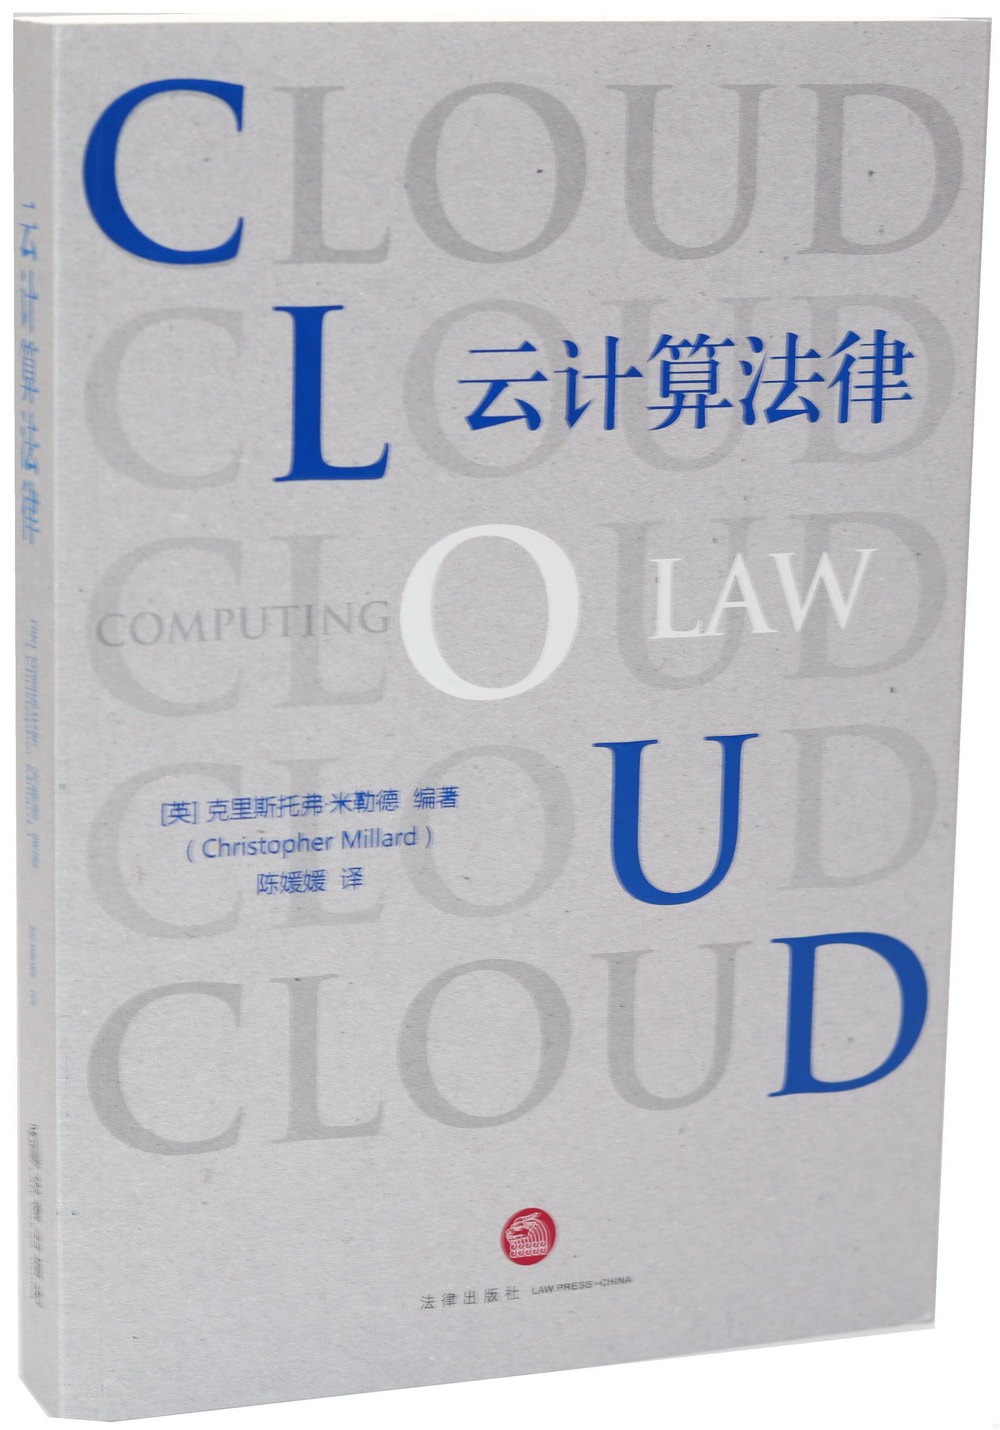 雲計演算法律